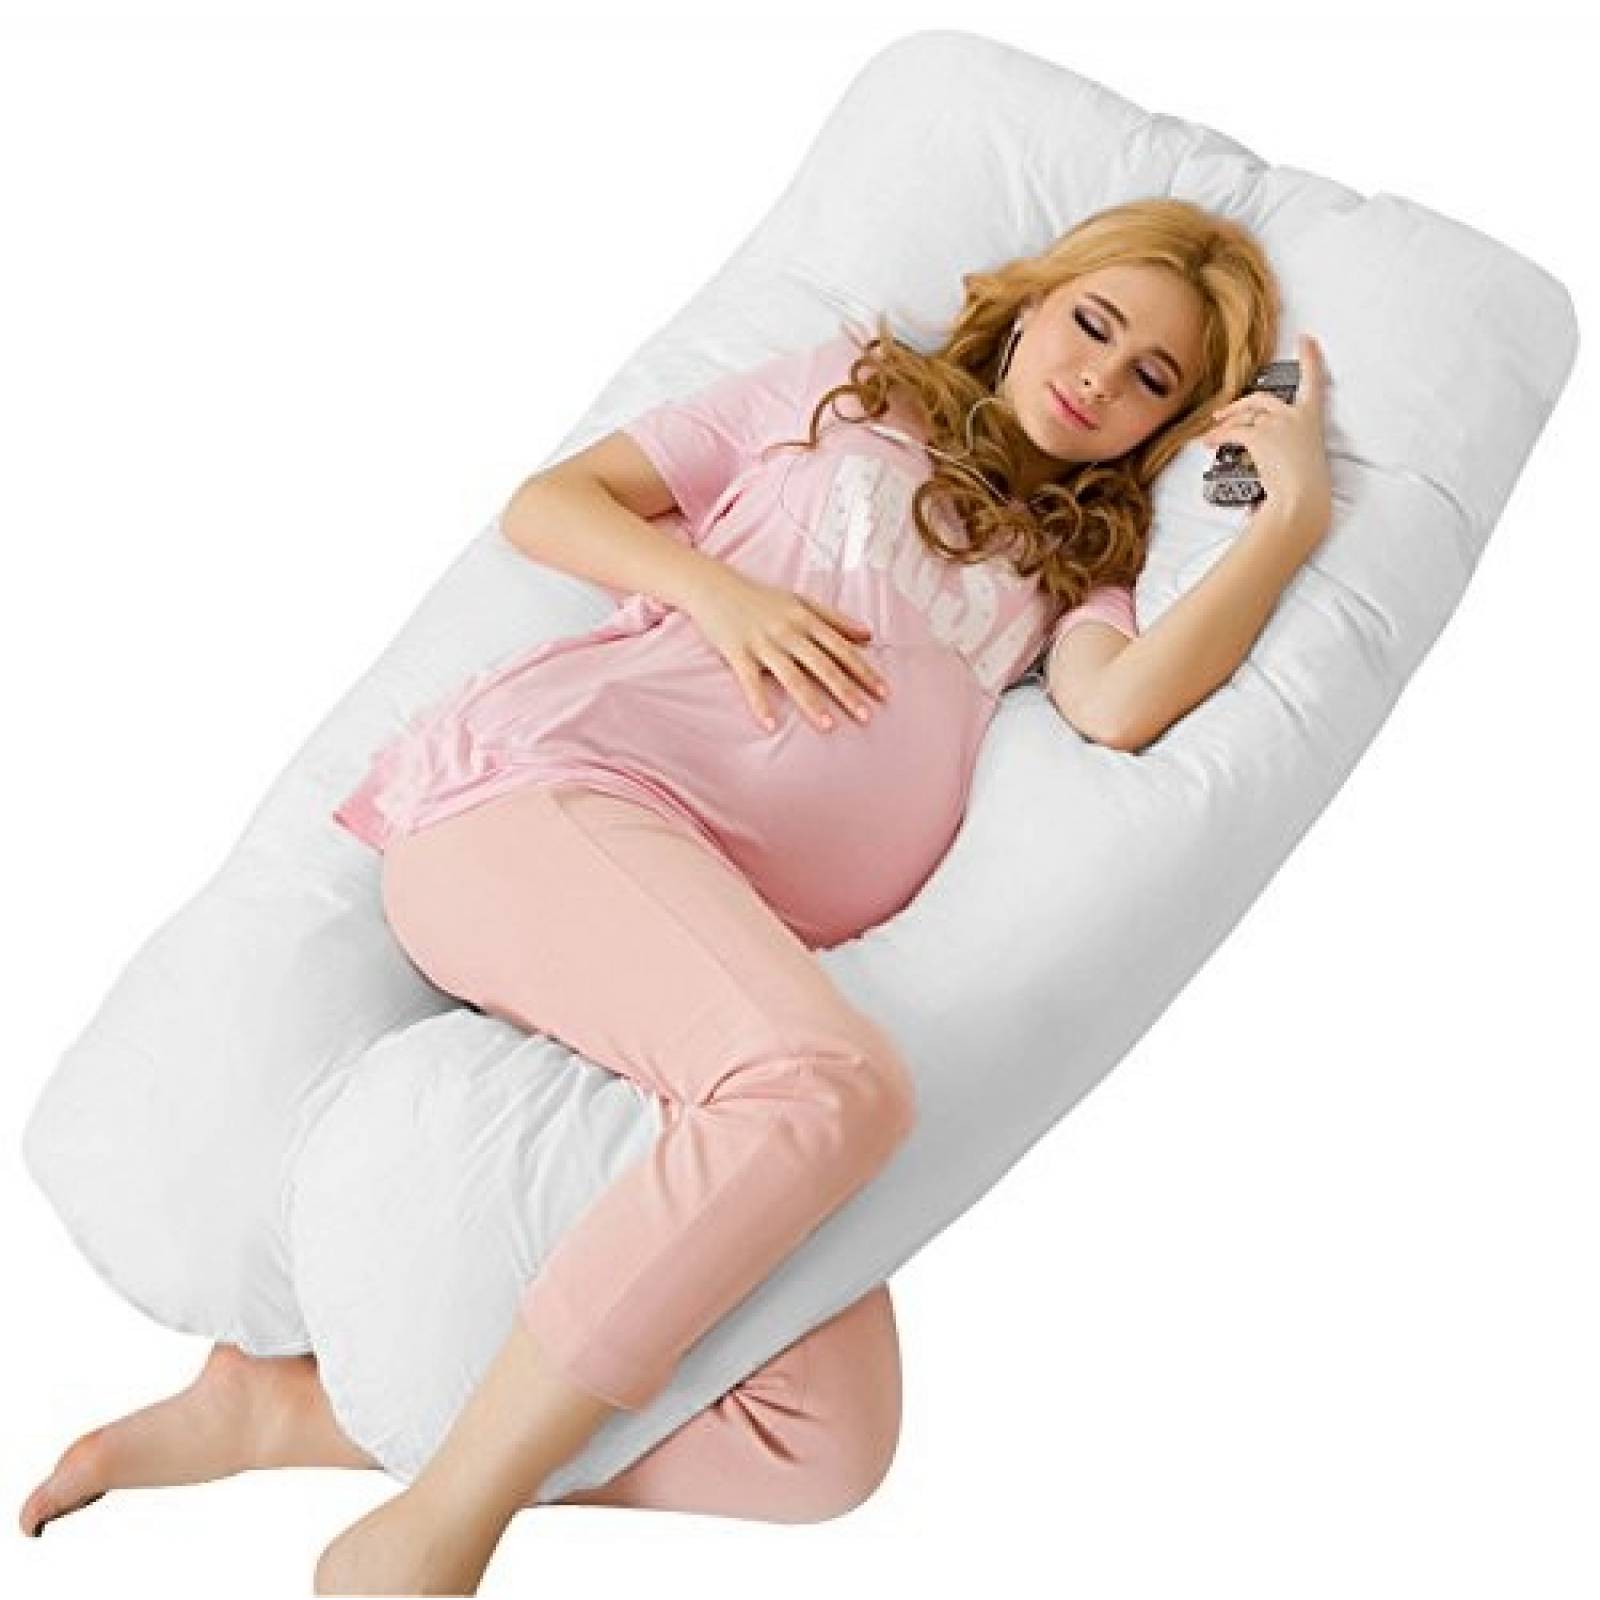 Almohada de maternidad Meiz cubierta 100% algodón -Blanco